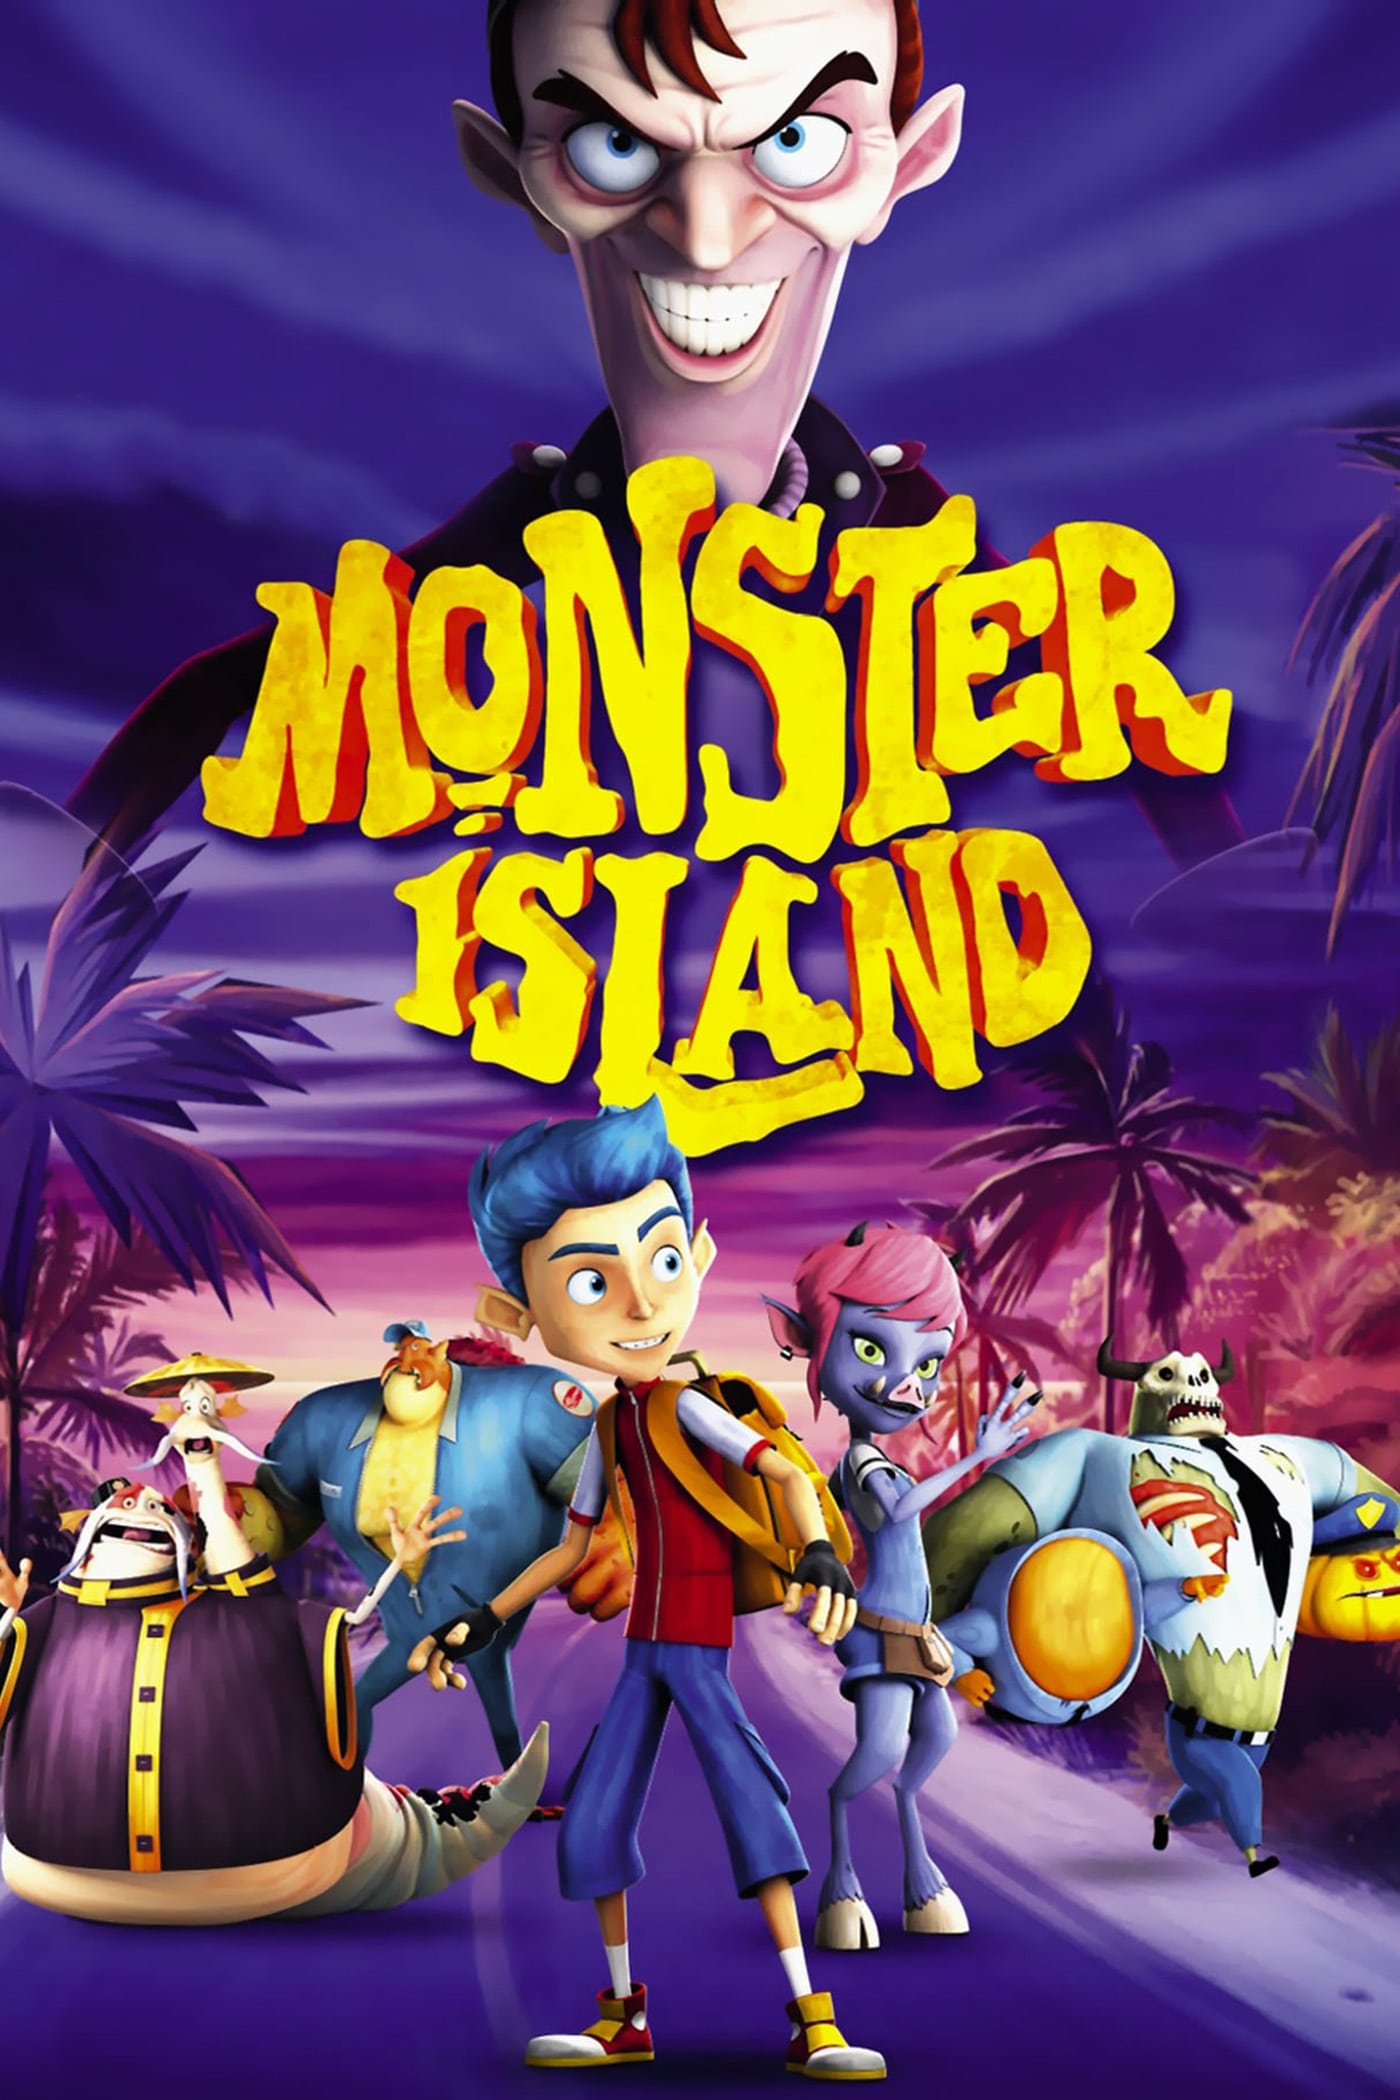 Đảo quái vật (Monster Island) [2017]